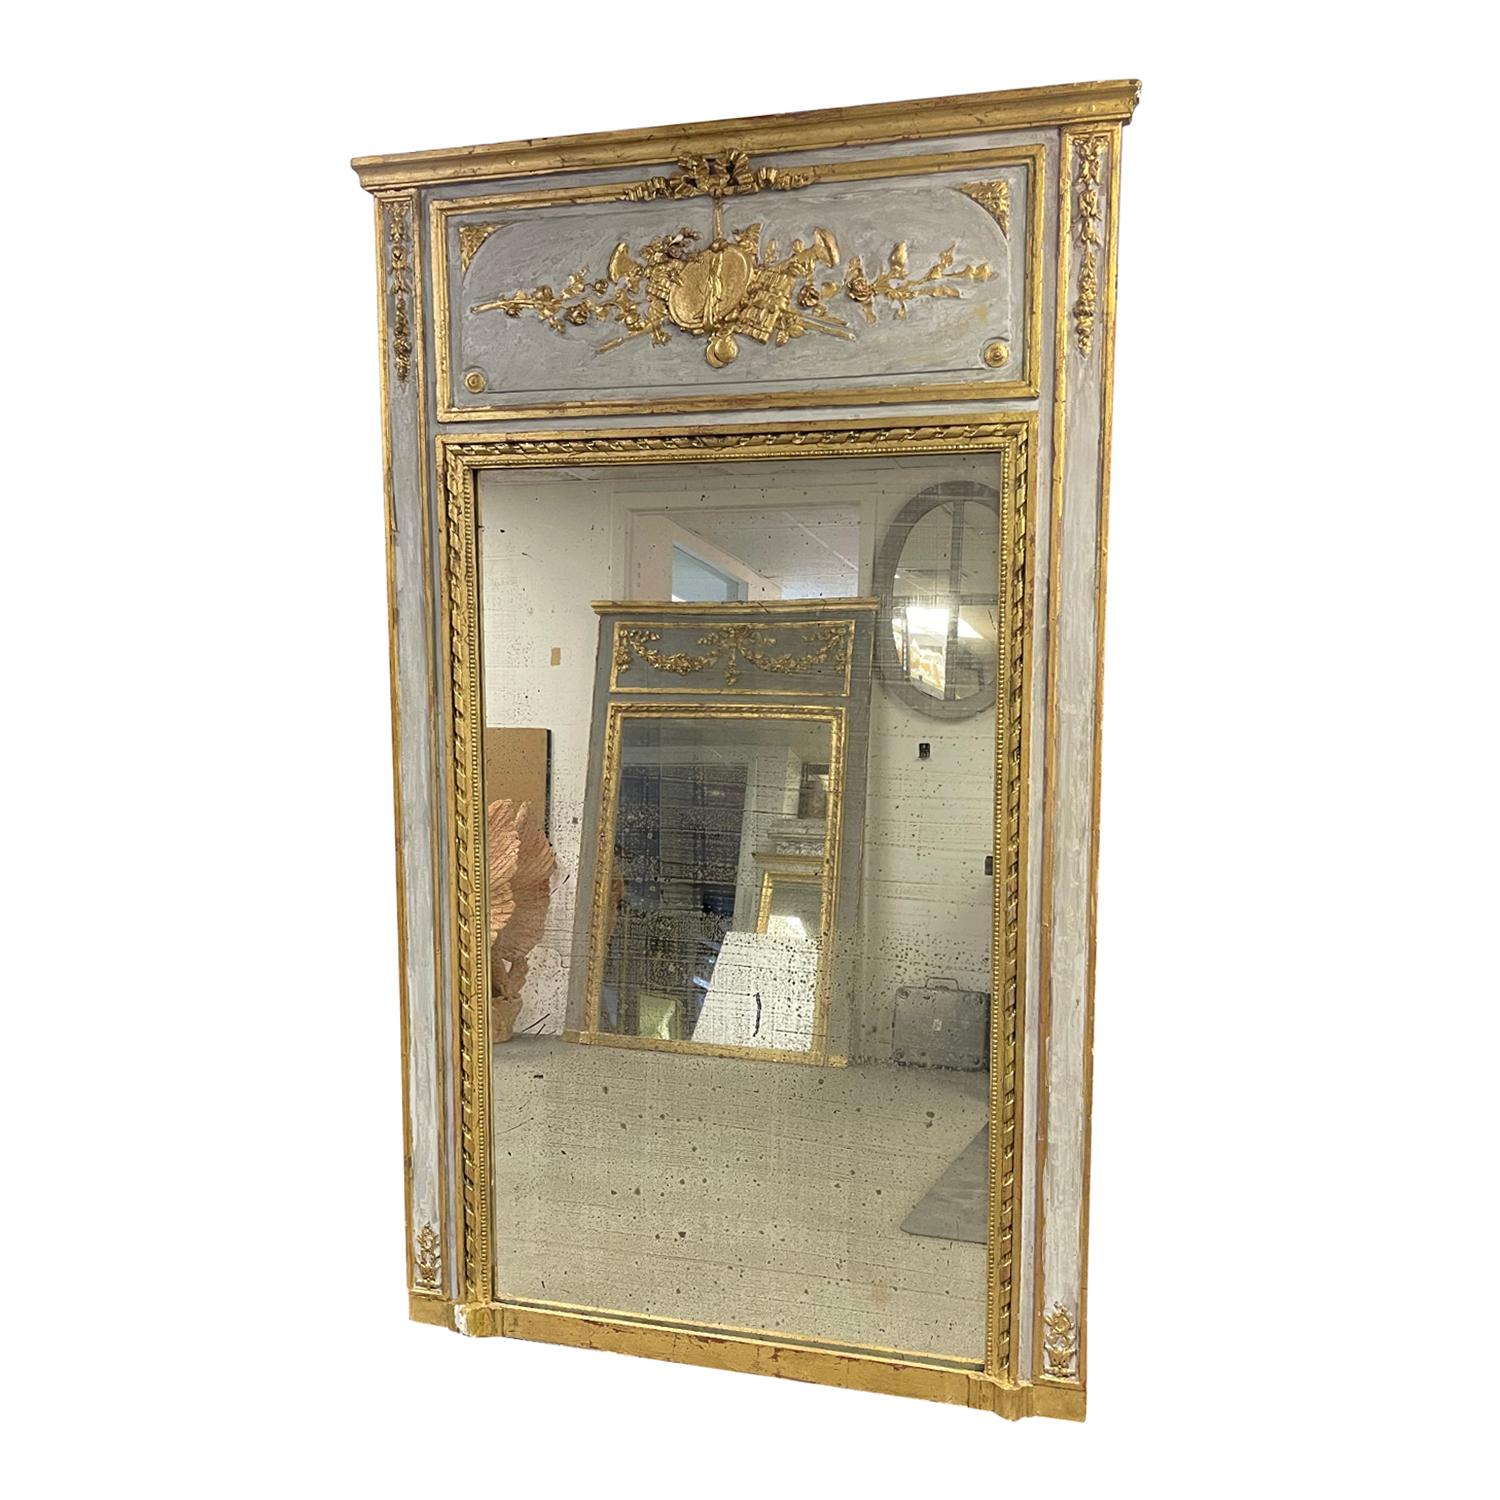 Ein typisch französischer geschnitzter und teilweise vergoldeter Trumeau-Spiegel aus dem 19. Jahrhundert, in gutem Zustand. Der antike Flurspiegel besteht aus seinem originalen Spiegelglas. Die Paneelplatte ist reich verziert mit akribischen